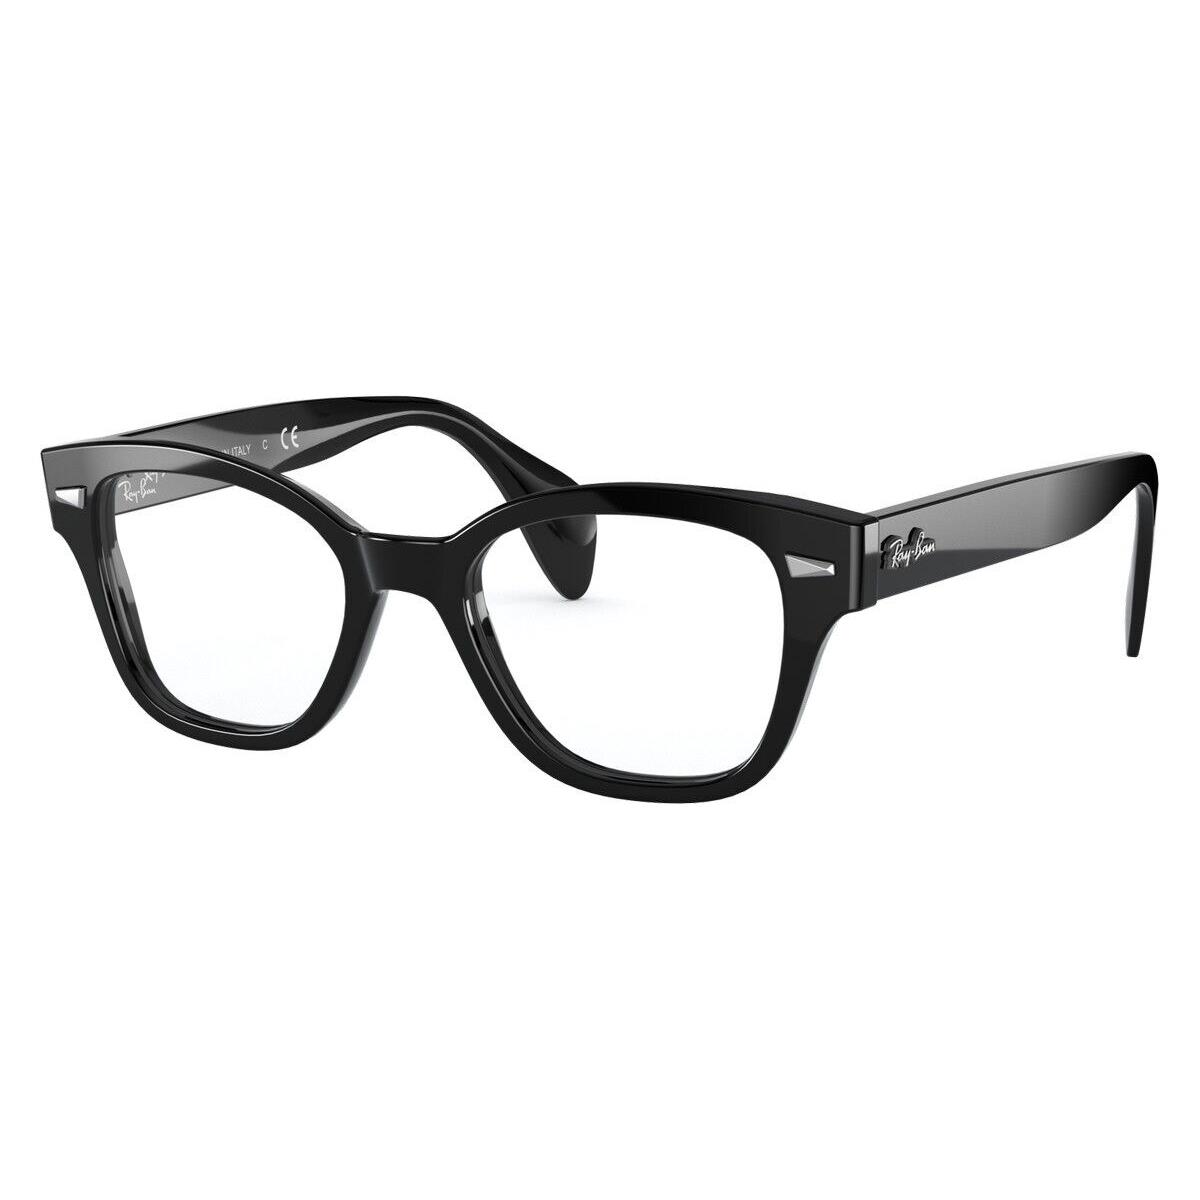 Ray-ban RX0880 Eyeglasses Unisex Black Square 52mm